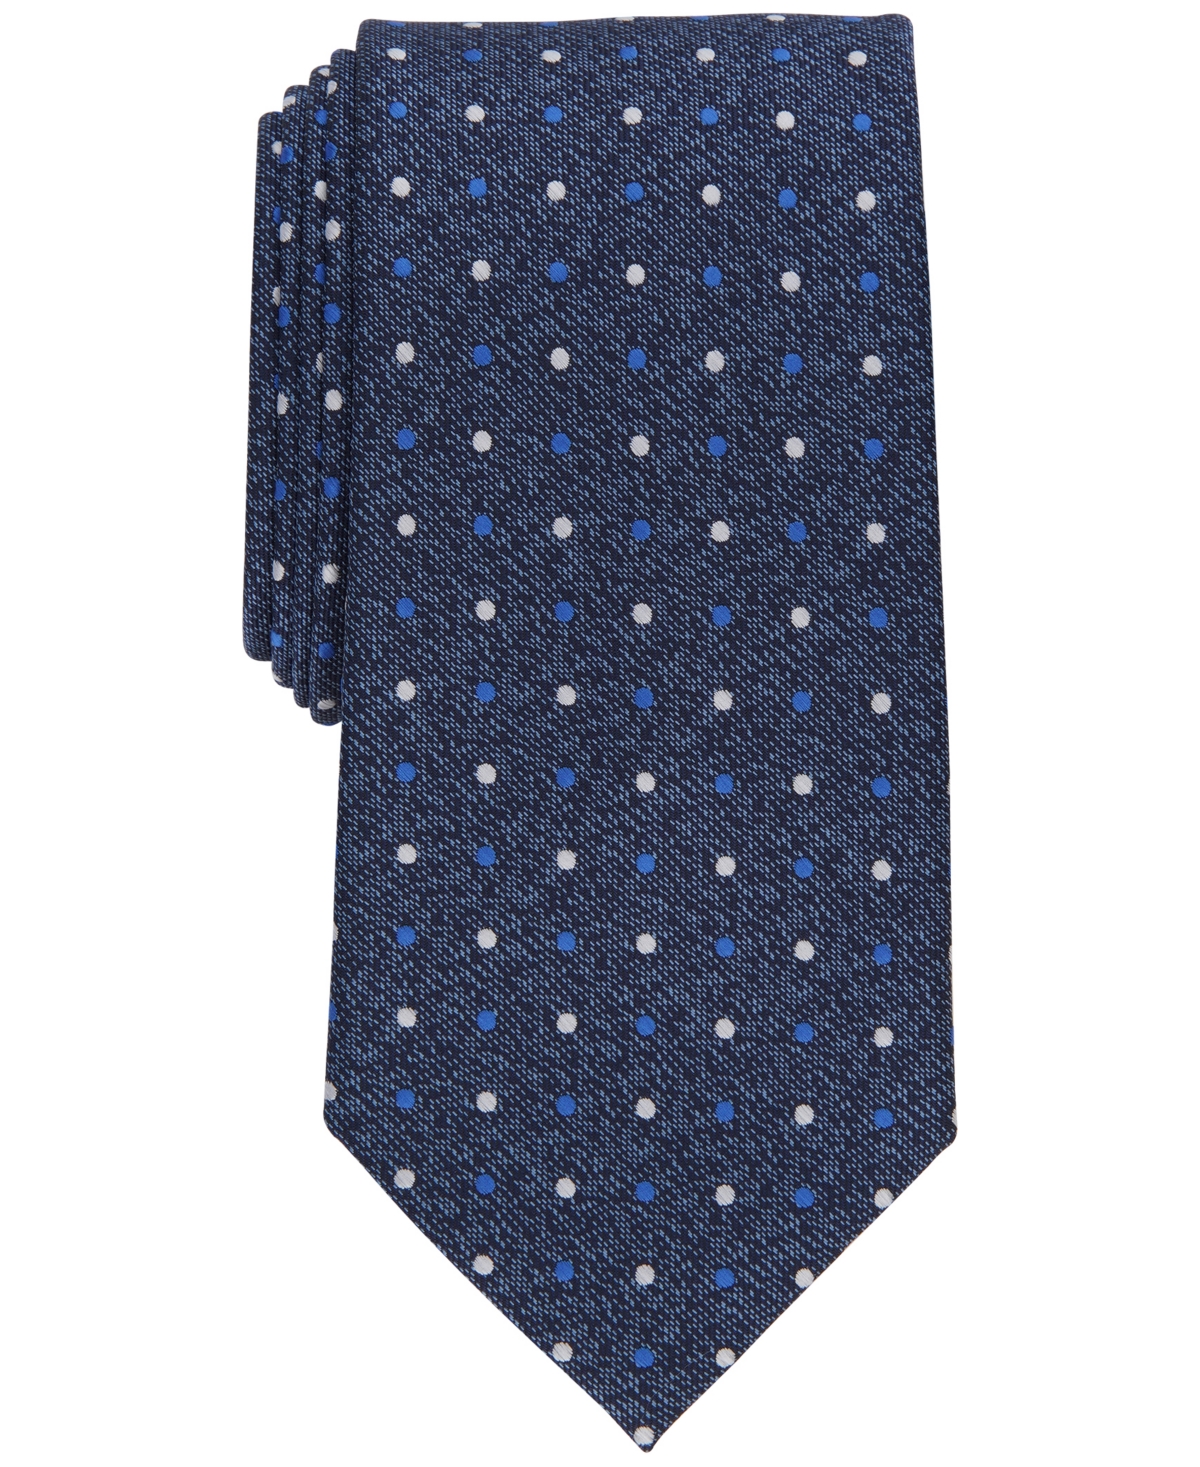 Men's Totten Classic Dot Tie, Created for Macy's - Navy